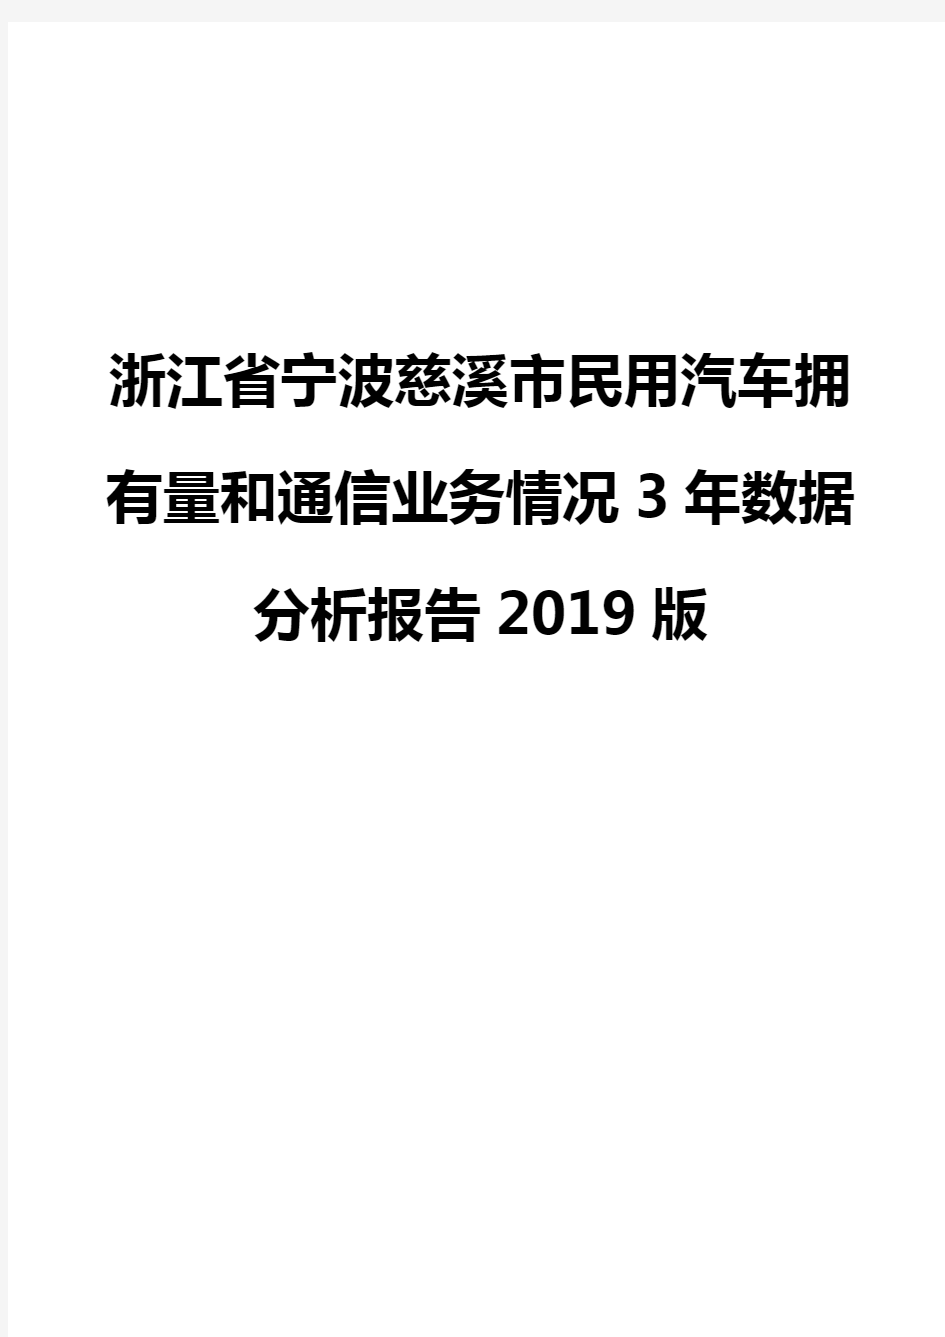 浙江省宁波慈溪市民用汽车拥有量和通信业务情况3年数据分析报告2019版